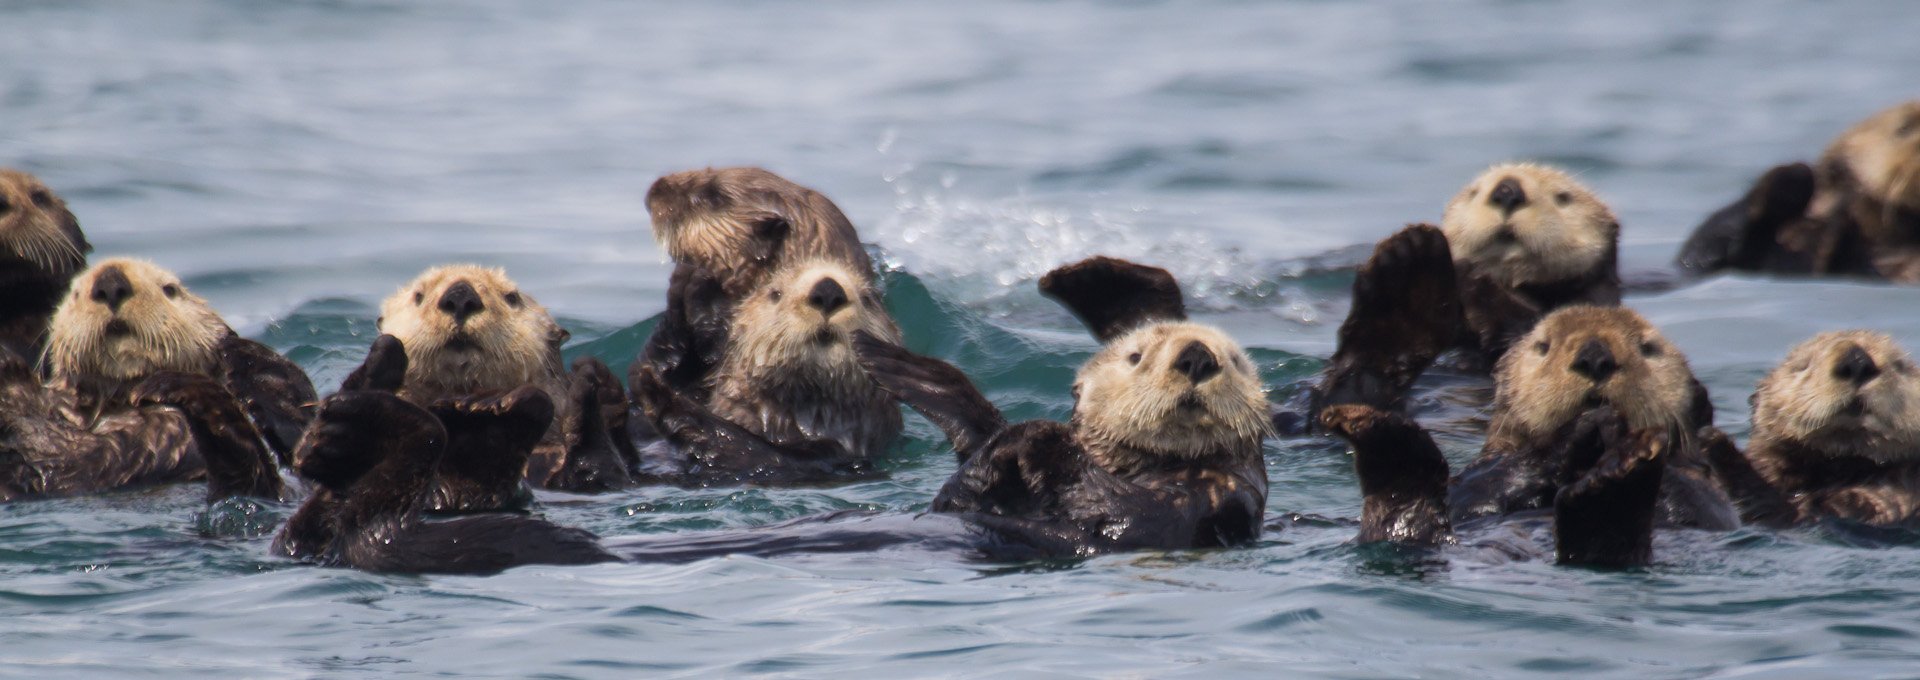 Sea otters in Glacier Bay